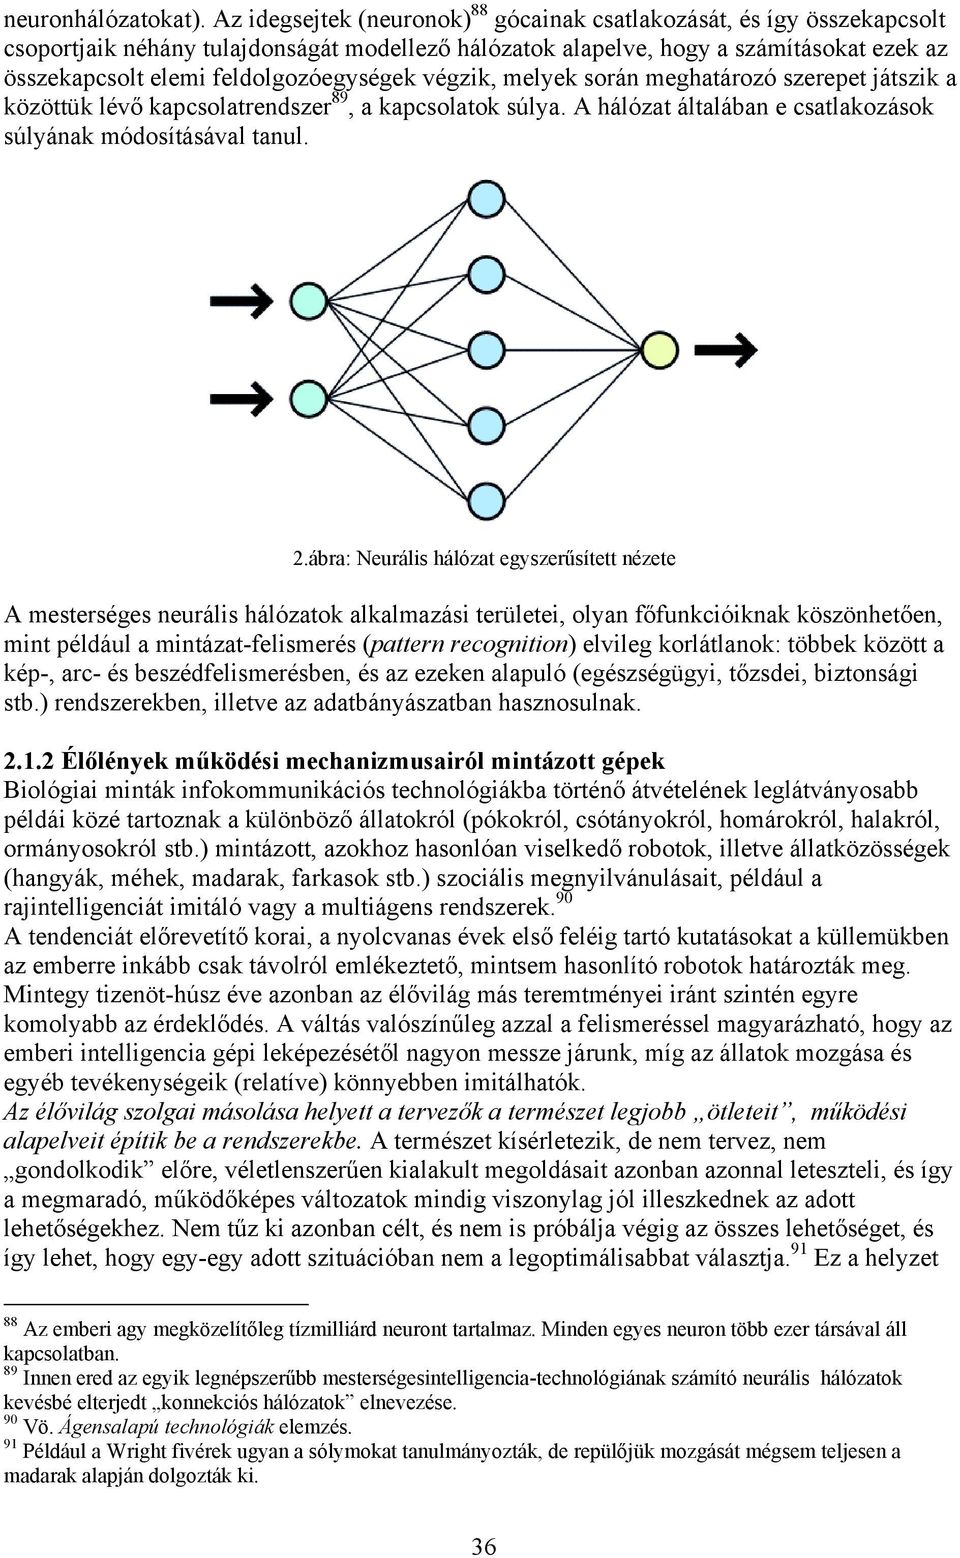 feldolgozóegységek végzik, melyek során meghatározó szerepet játszik a közöttük lévő kapcsolatrendszer 89, a kapcsolatok súlya. A hálózat általában e csatlakozások súlyának módosításával tanul. 2.